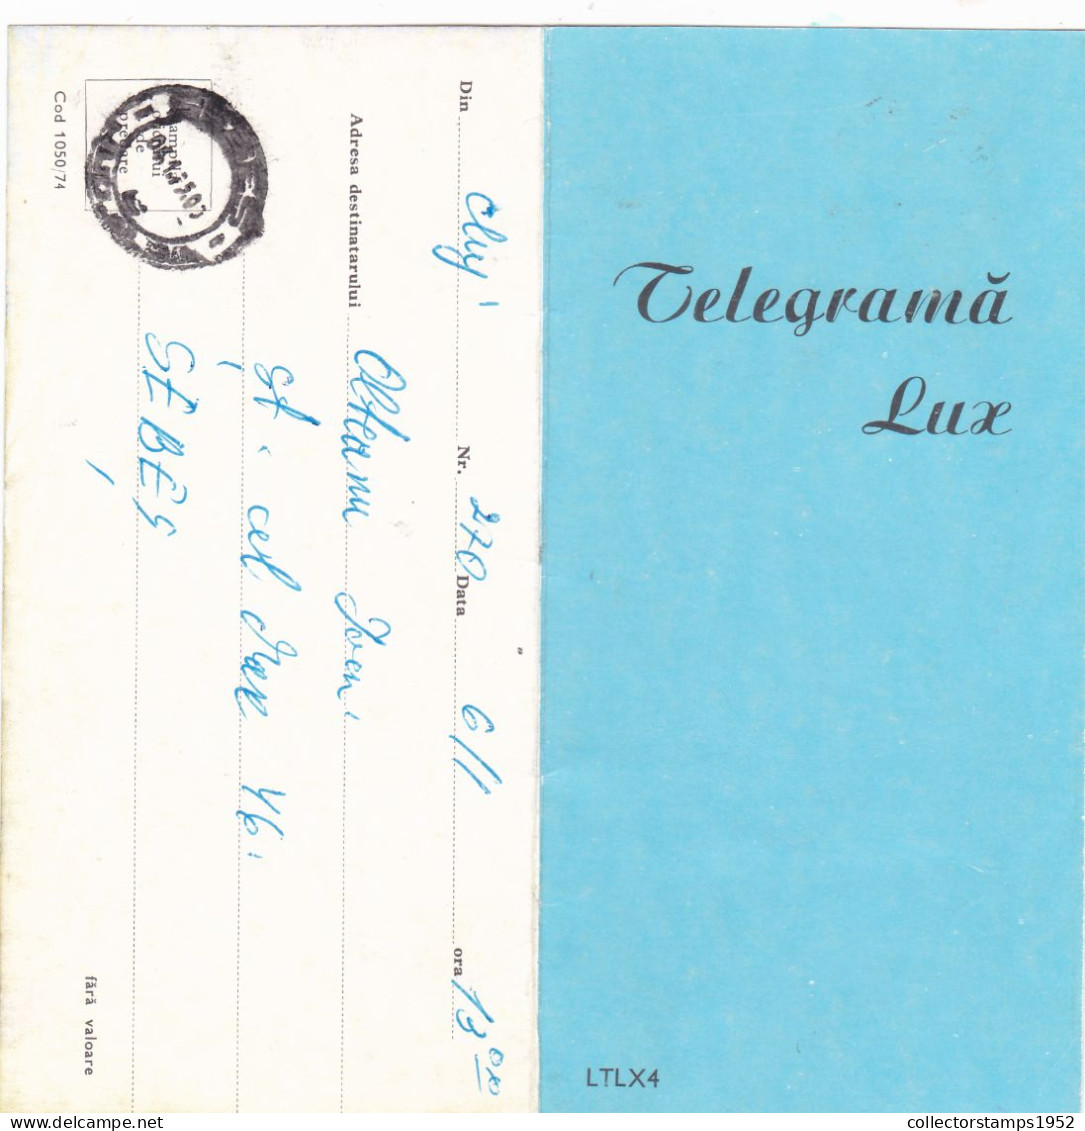 ARHITECTURE,TELEGRAM, TELEGRAPH, 1974, ROMANIA,cod.1050/74,LTLX4. - Telégrafos